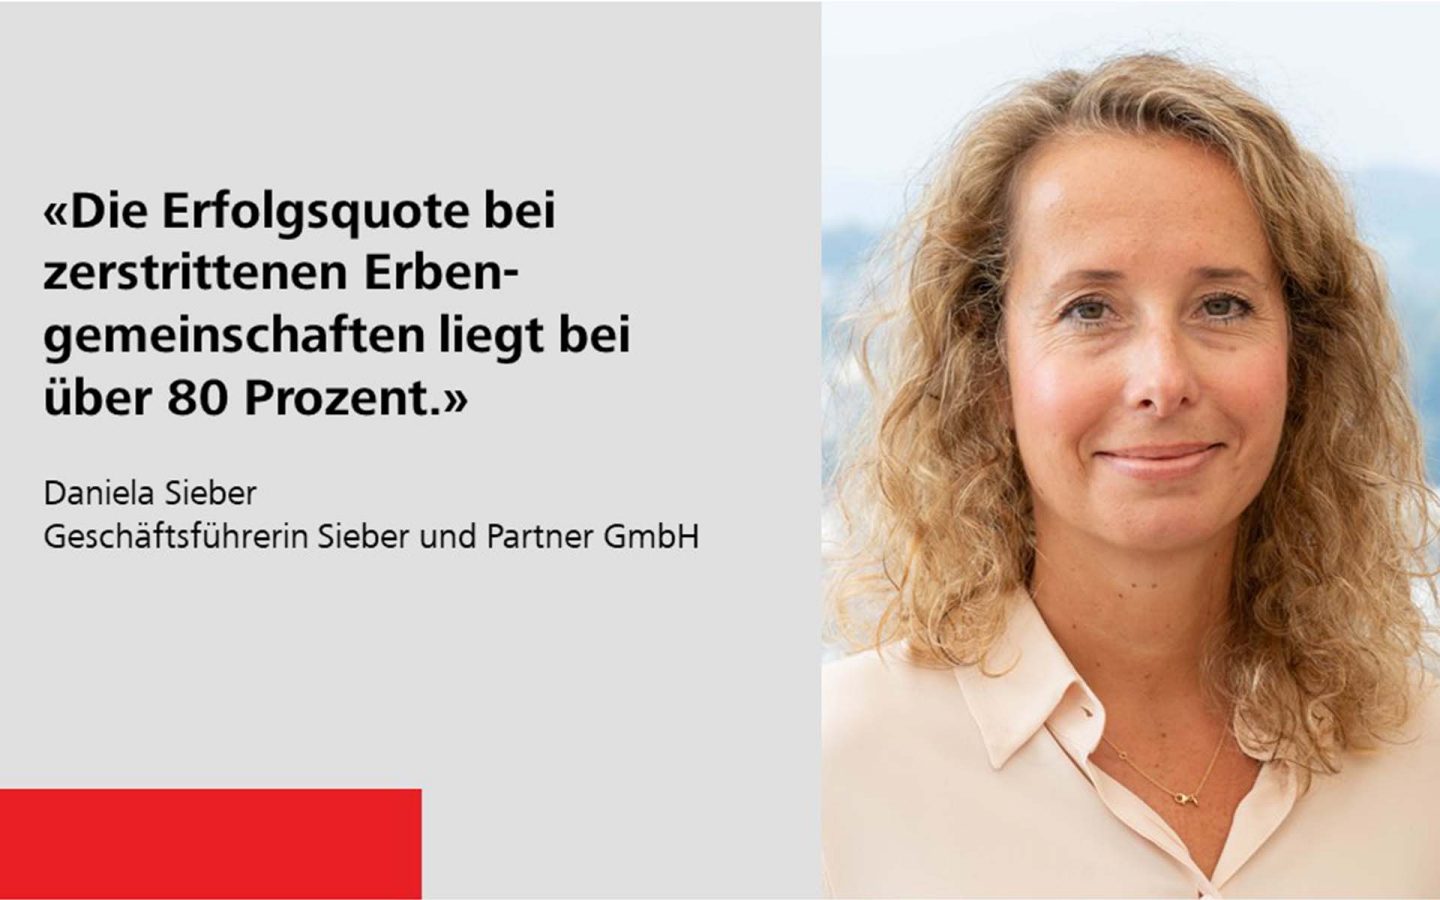 Daniela Sieber - Geschäftsführerin Sieber und Partner GmbH